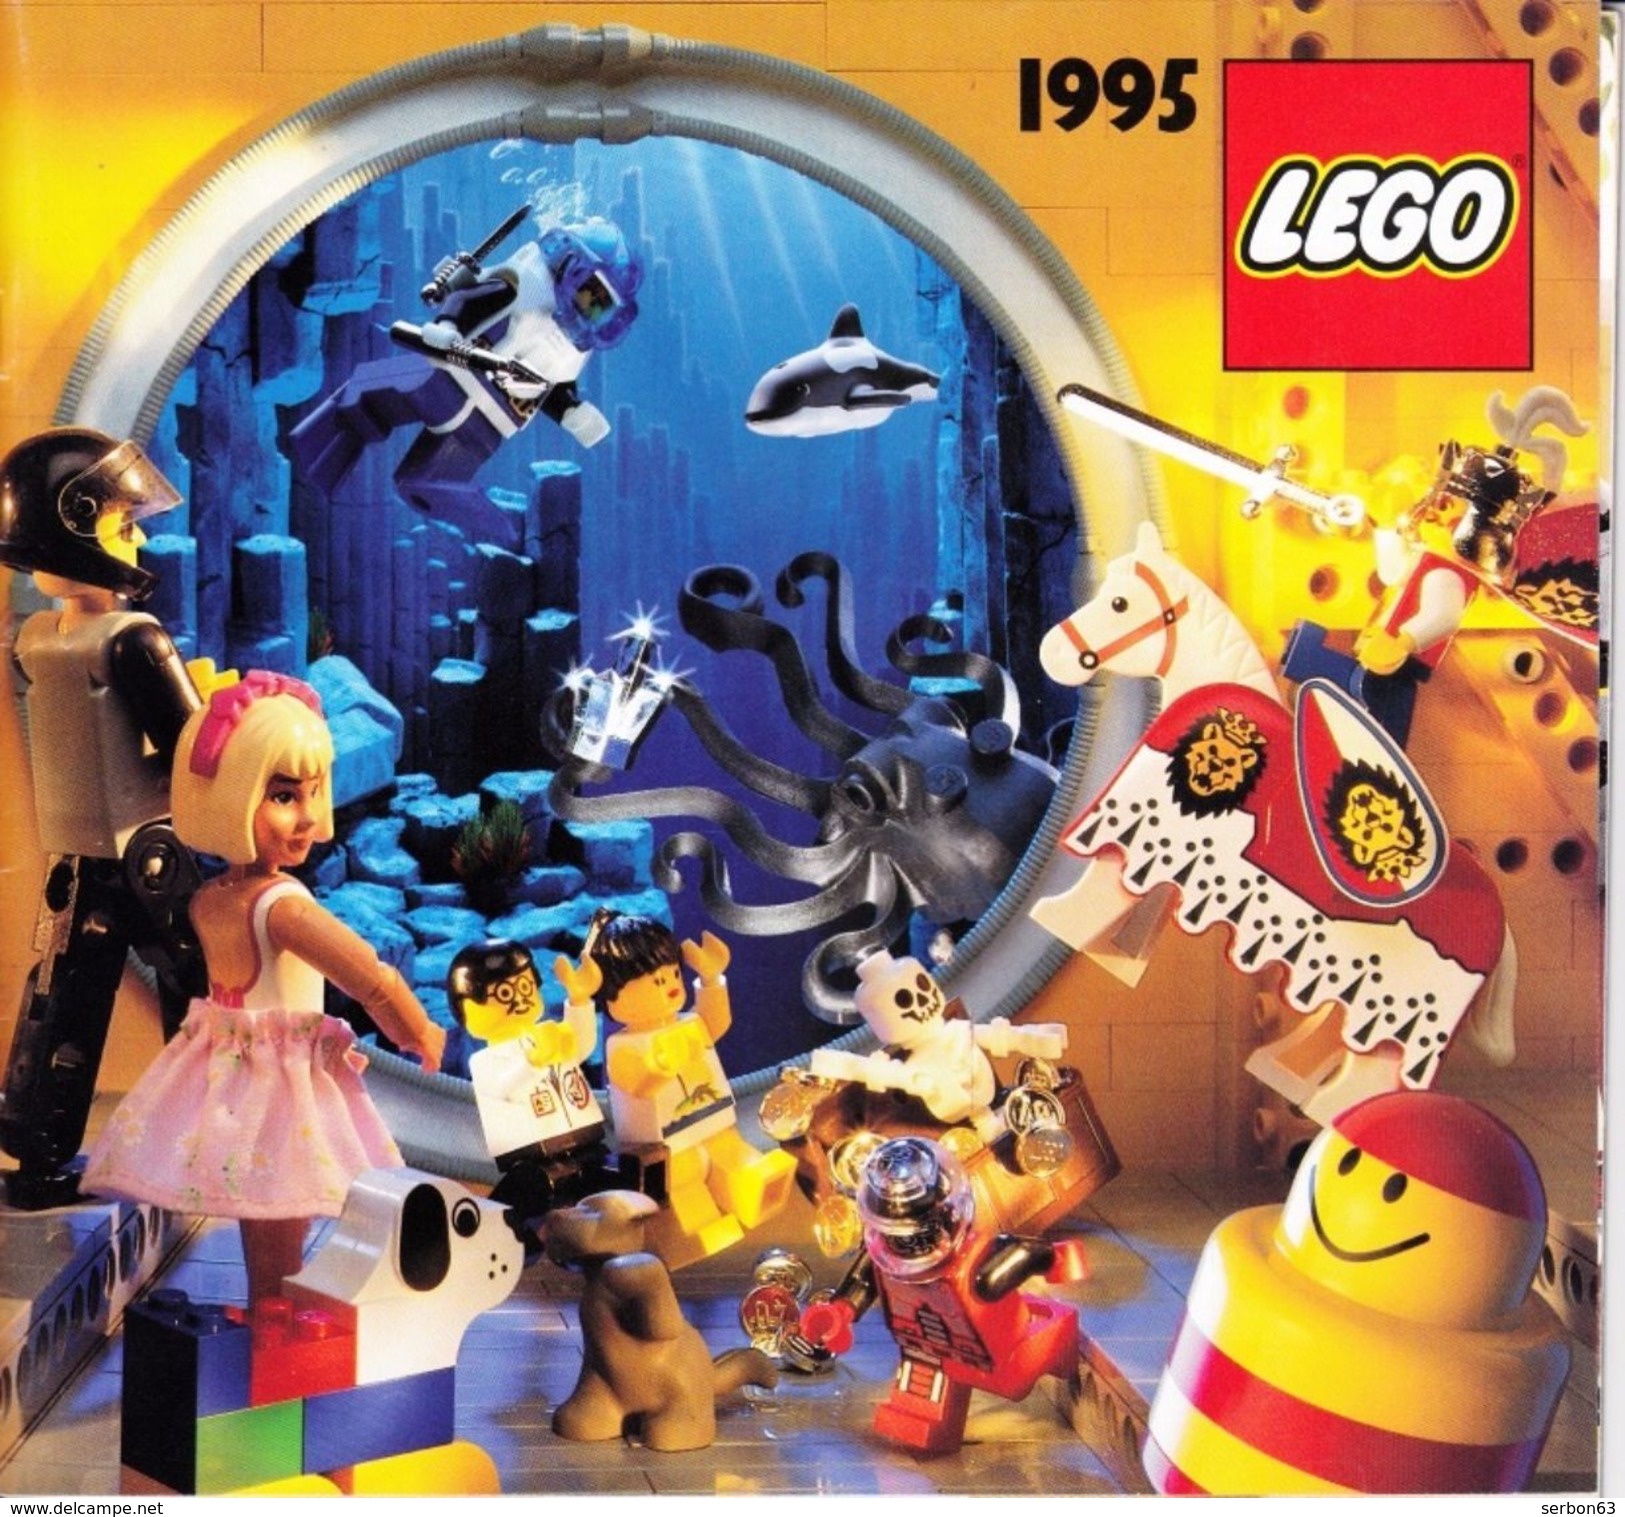 UN CATALOGUE LEGO DE 1995 56 PAGES COULEUR LEGER PLI SUR LA DE (SUR MON SITE Serbon63 DES MILLIERS D'ARTICLES EN VENTES) - Cataloghi